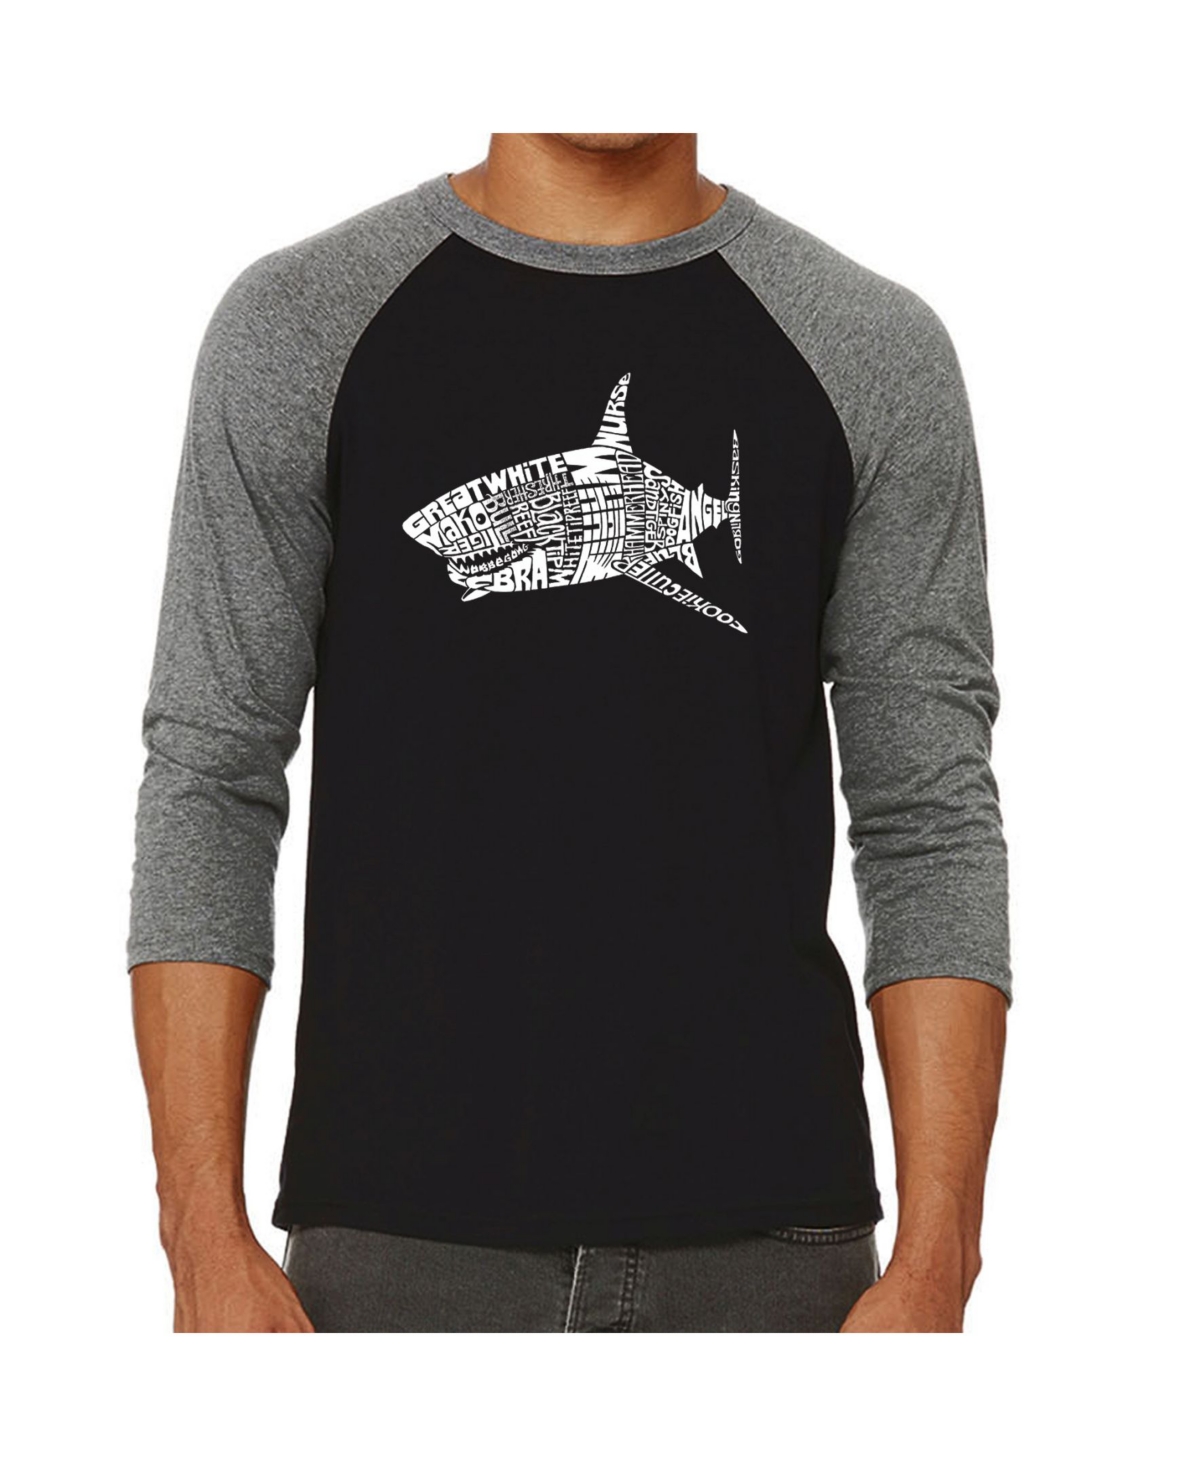 La Pop Art Species of Shark Men's Raglan Word Art T-shirt